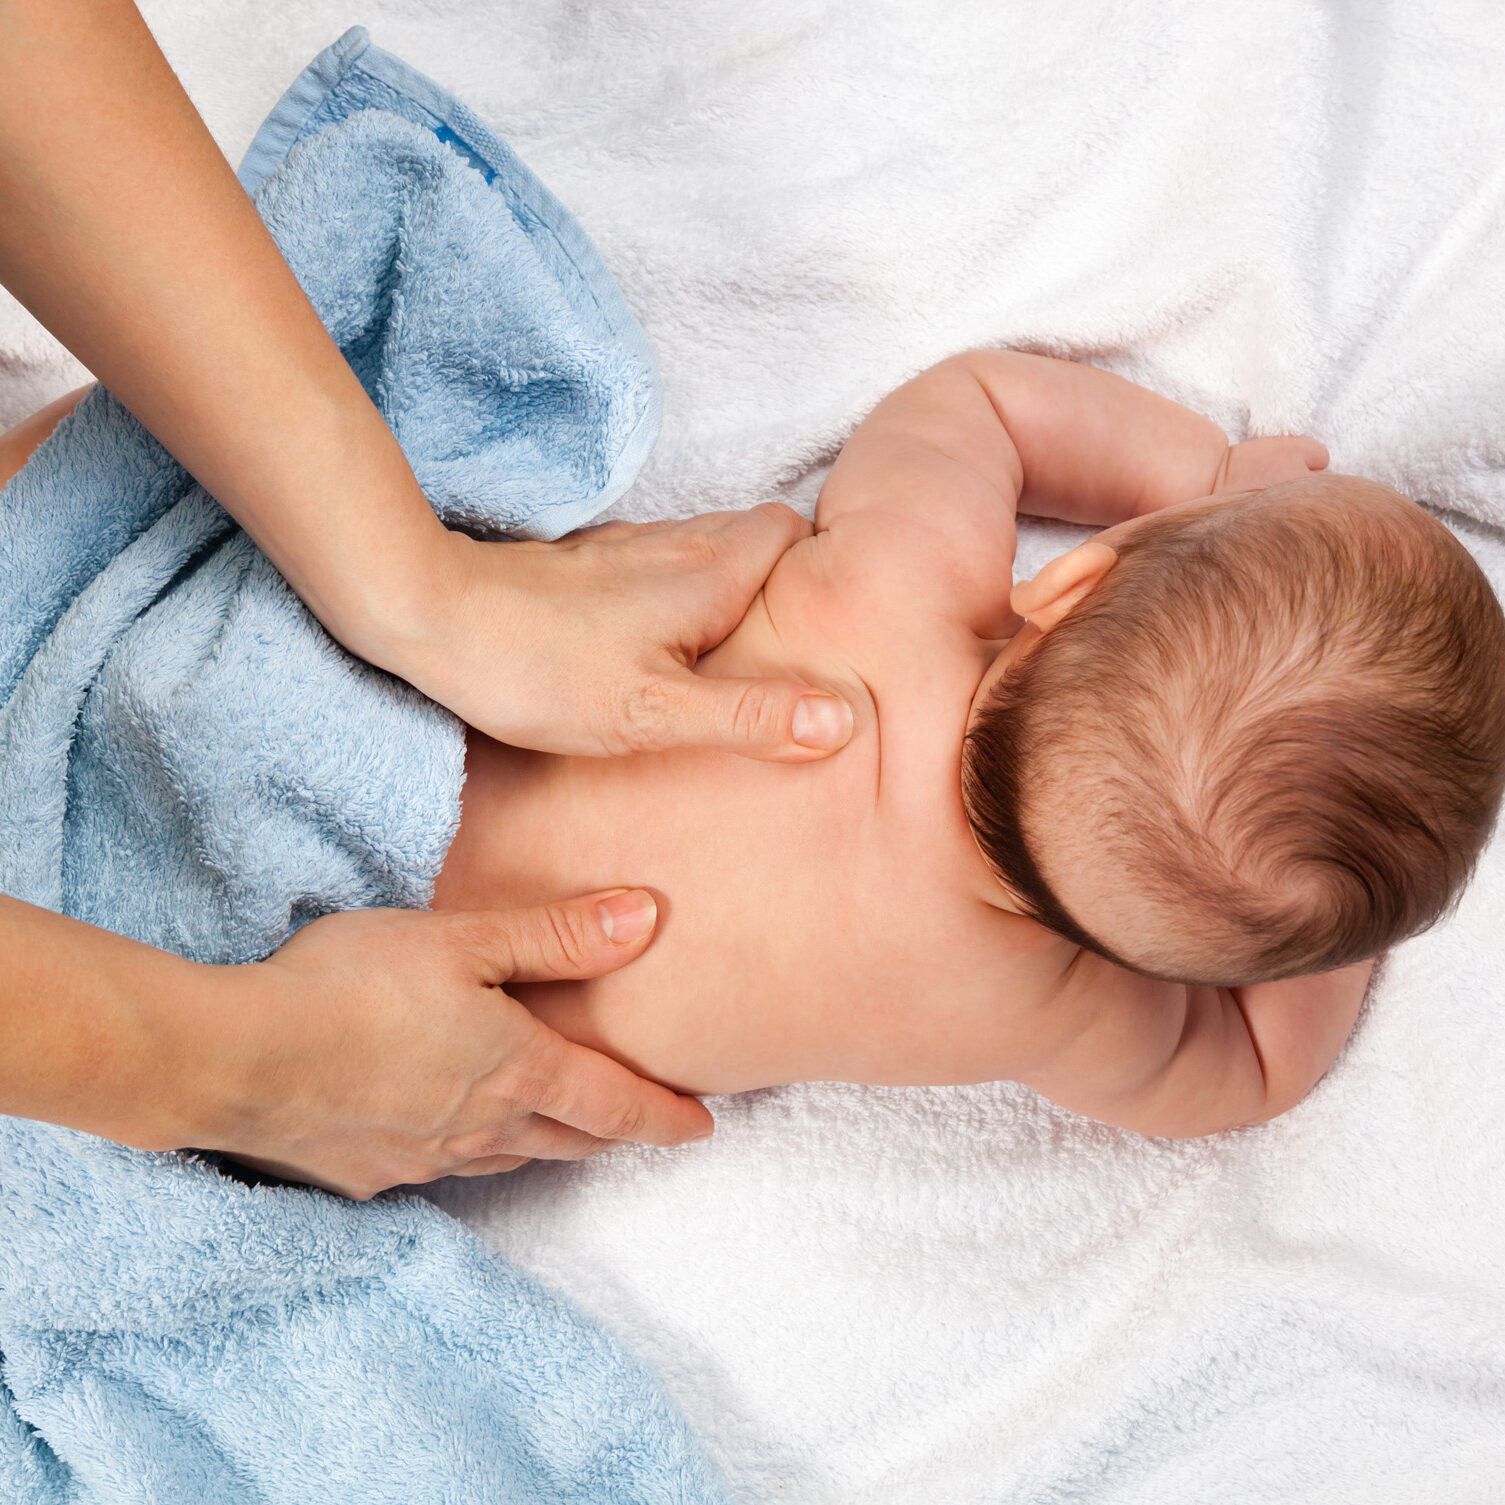 Masseuse massaging 5 months infant